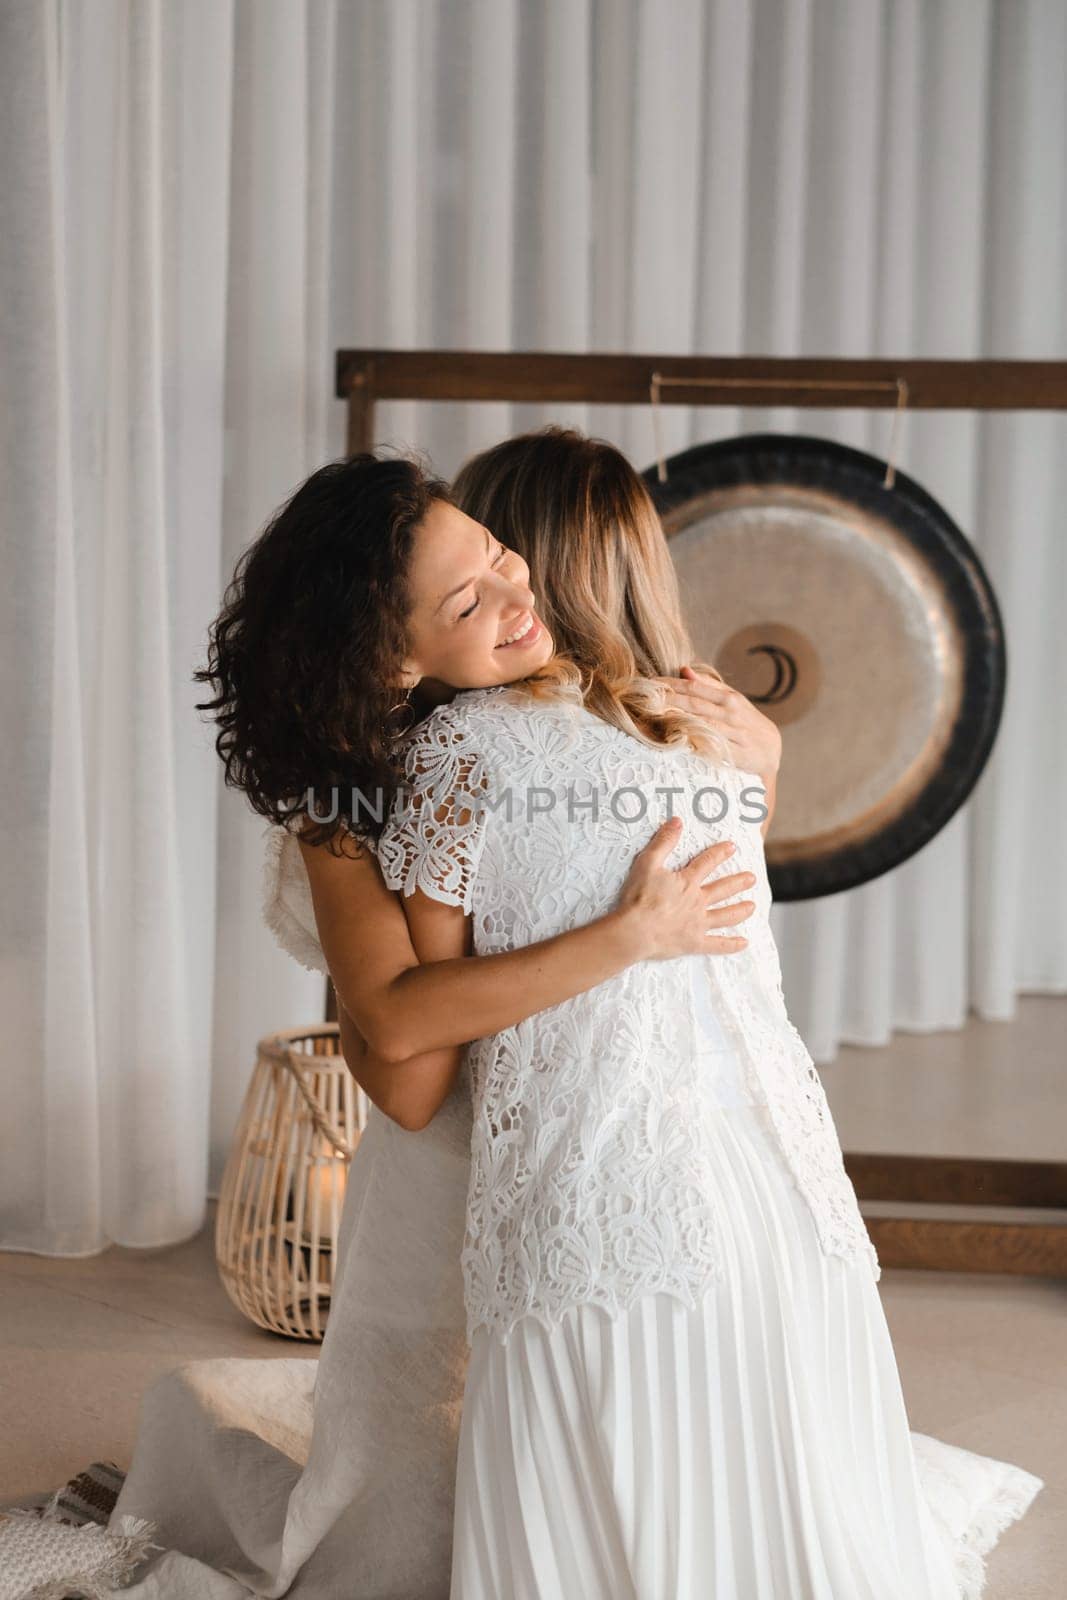 Two women hug at yoga. Women's Circle.